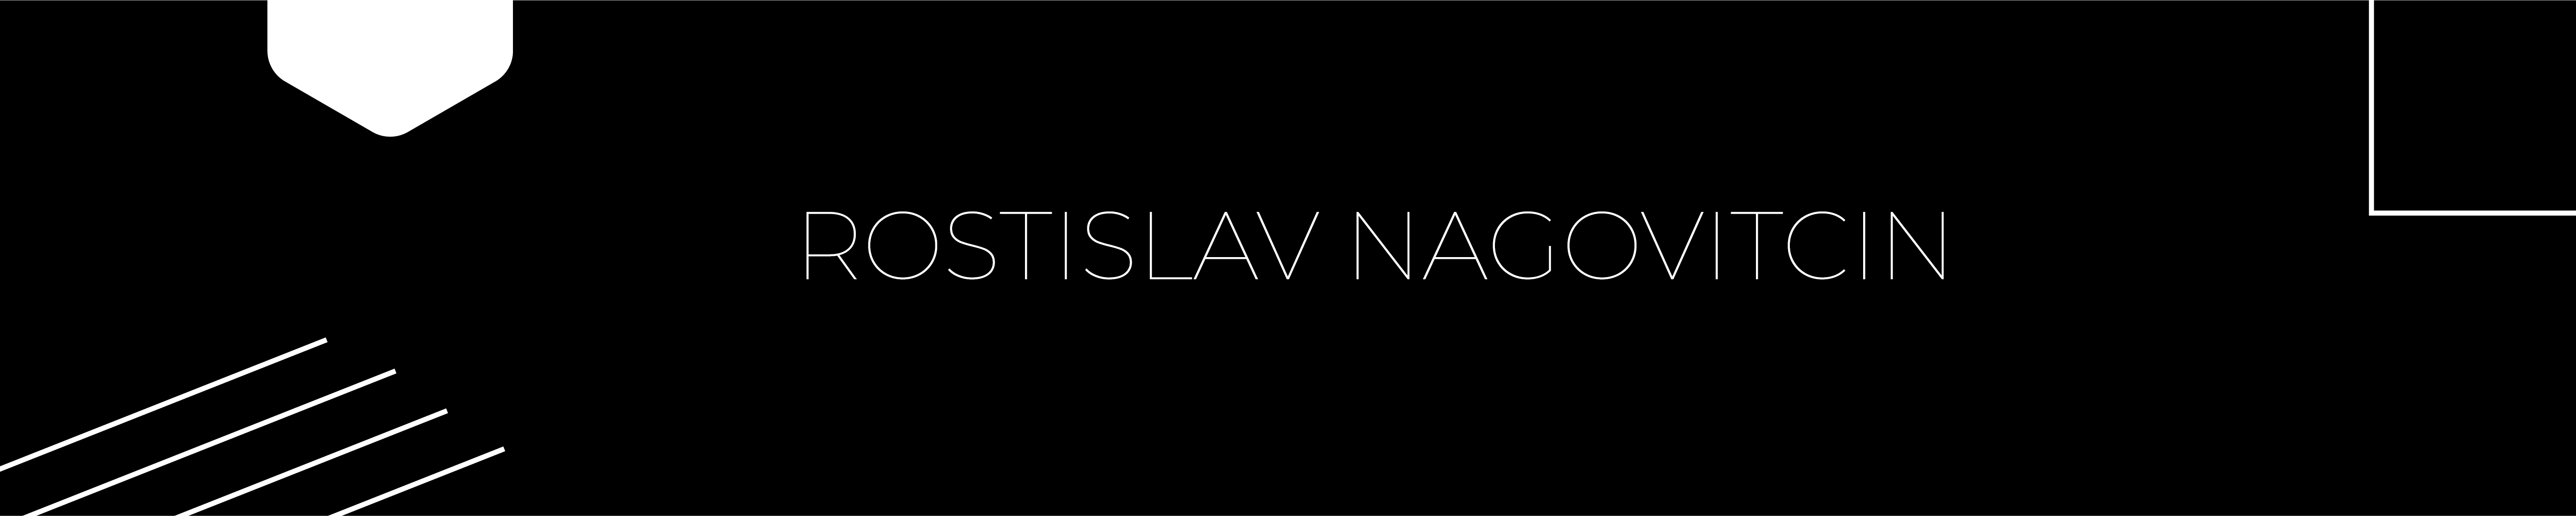 Rostislav Nagovitcin's profile banner